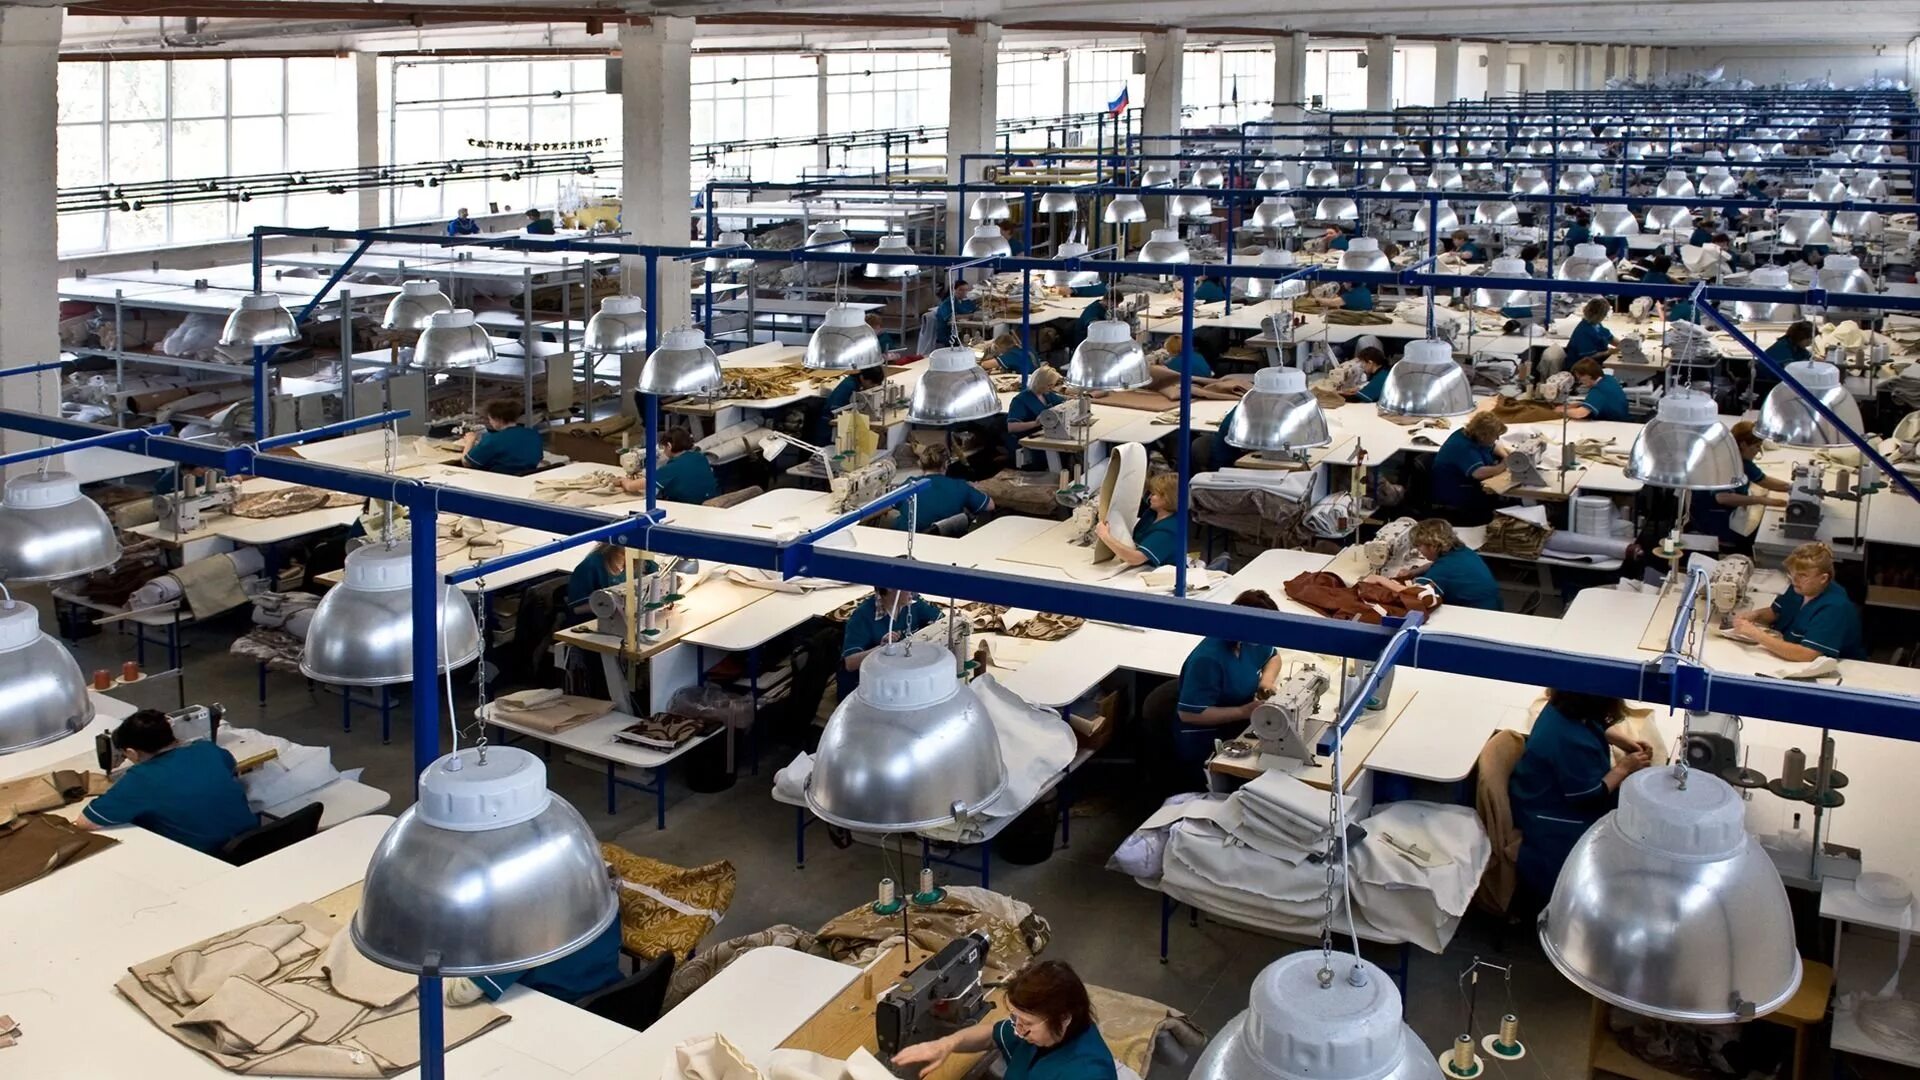 Фабрика - Ткацкая фабрика - швейная фабрика. Швейный цех. Текстильное производство. Цех текстильной фабрики.